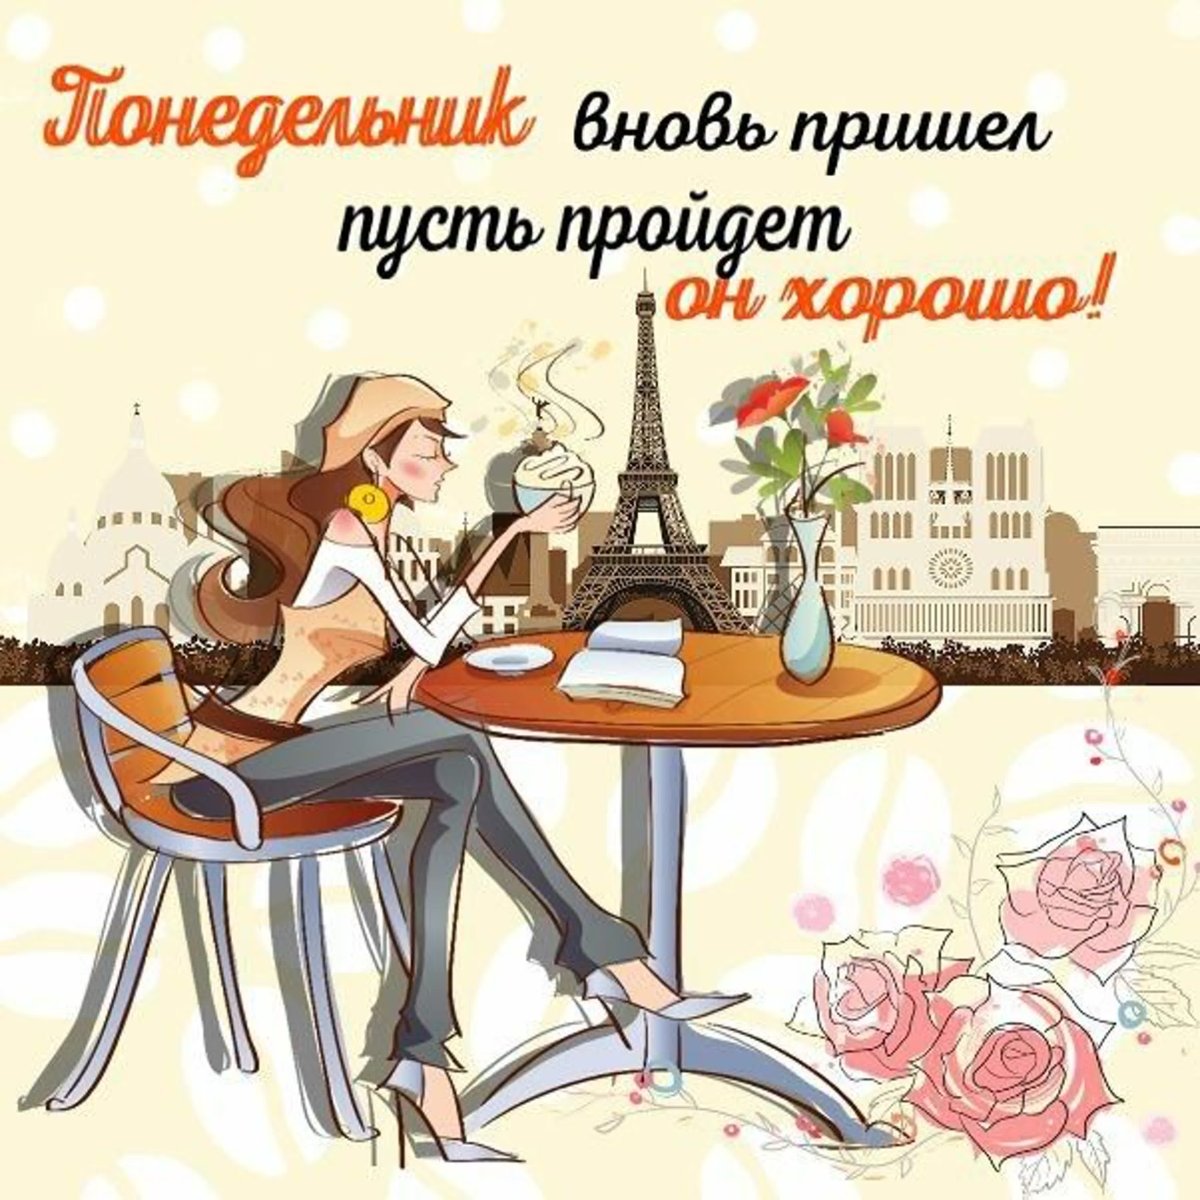 Иллюстрация девушки, сидящей за столиком в кафе с видом на Эйфелеву башню, с надписью Понедельник. Вновь пришел, пусть пройдет он хорошо!